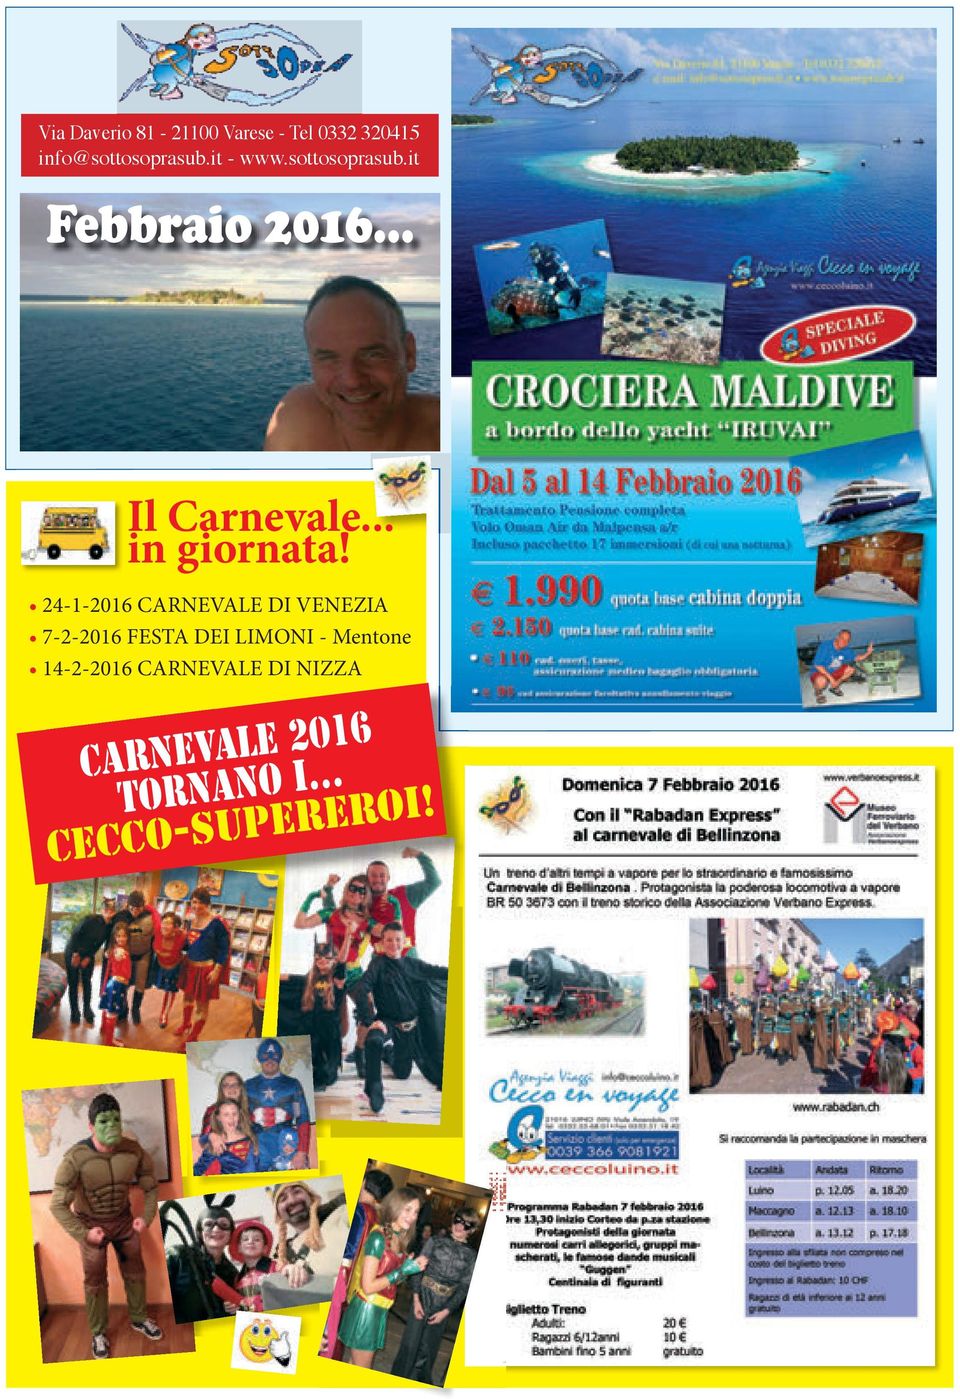 24-1-2016 CARNEVALE DI VENEZIA 7-2-2016 FESTA DEI LIMONI - Mentone